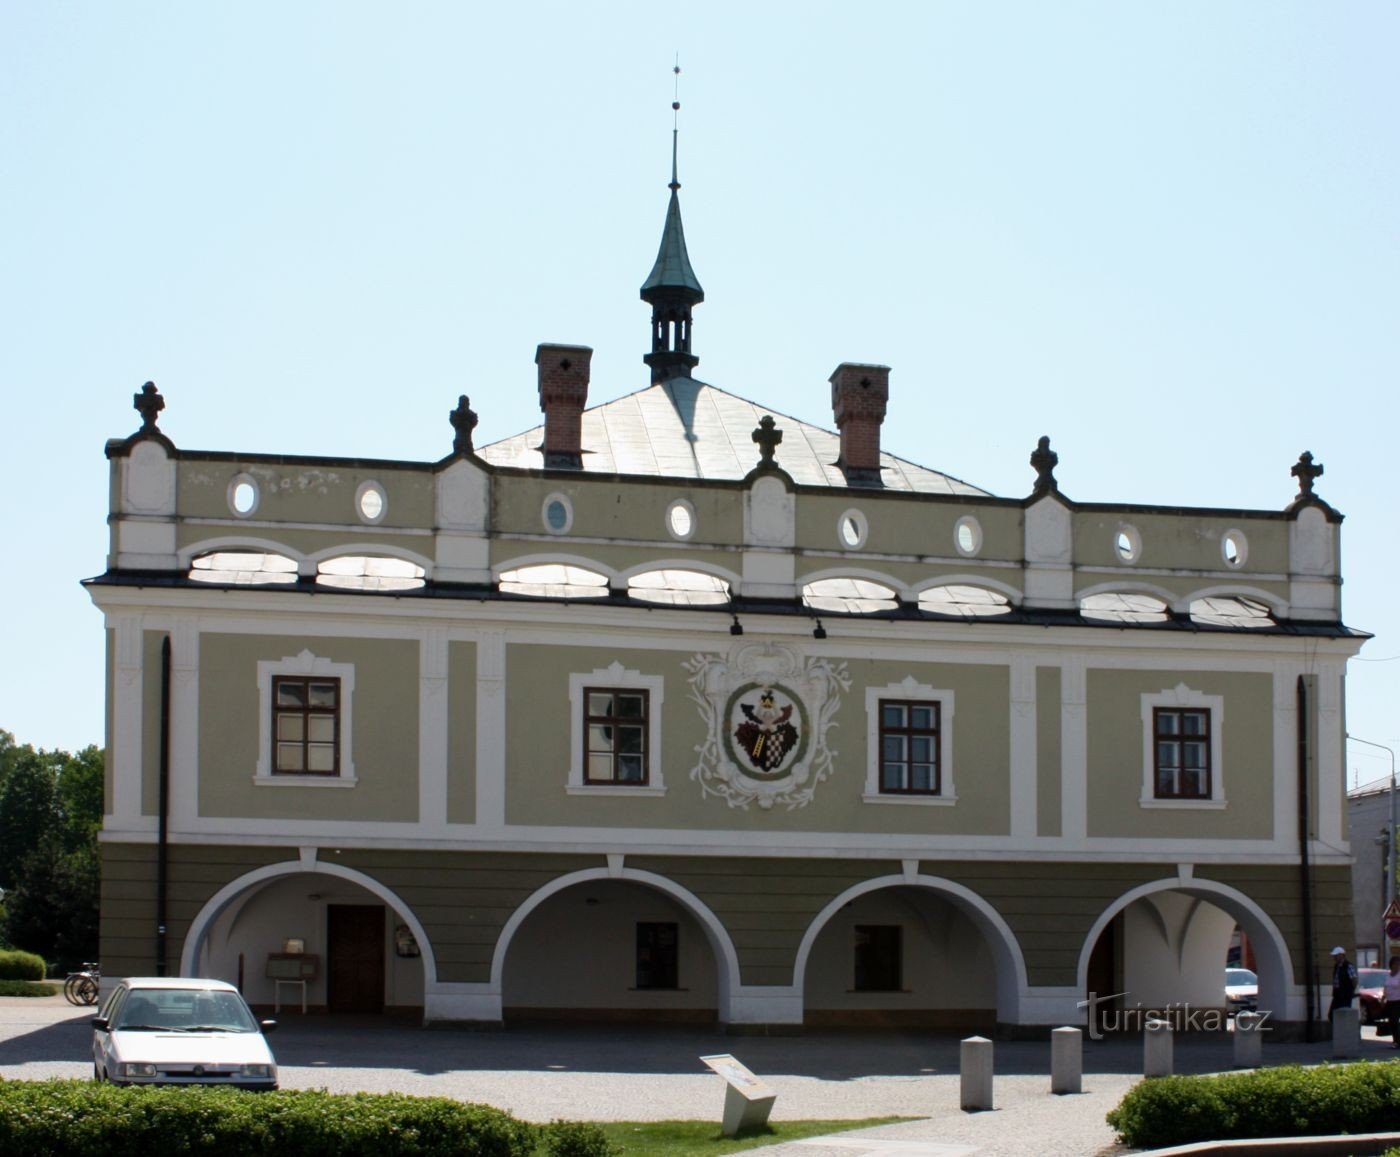 Spa Bohdaneč - Rådhuset